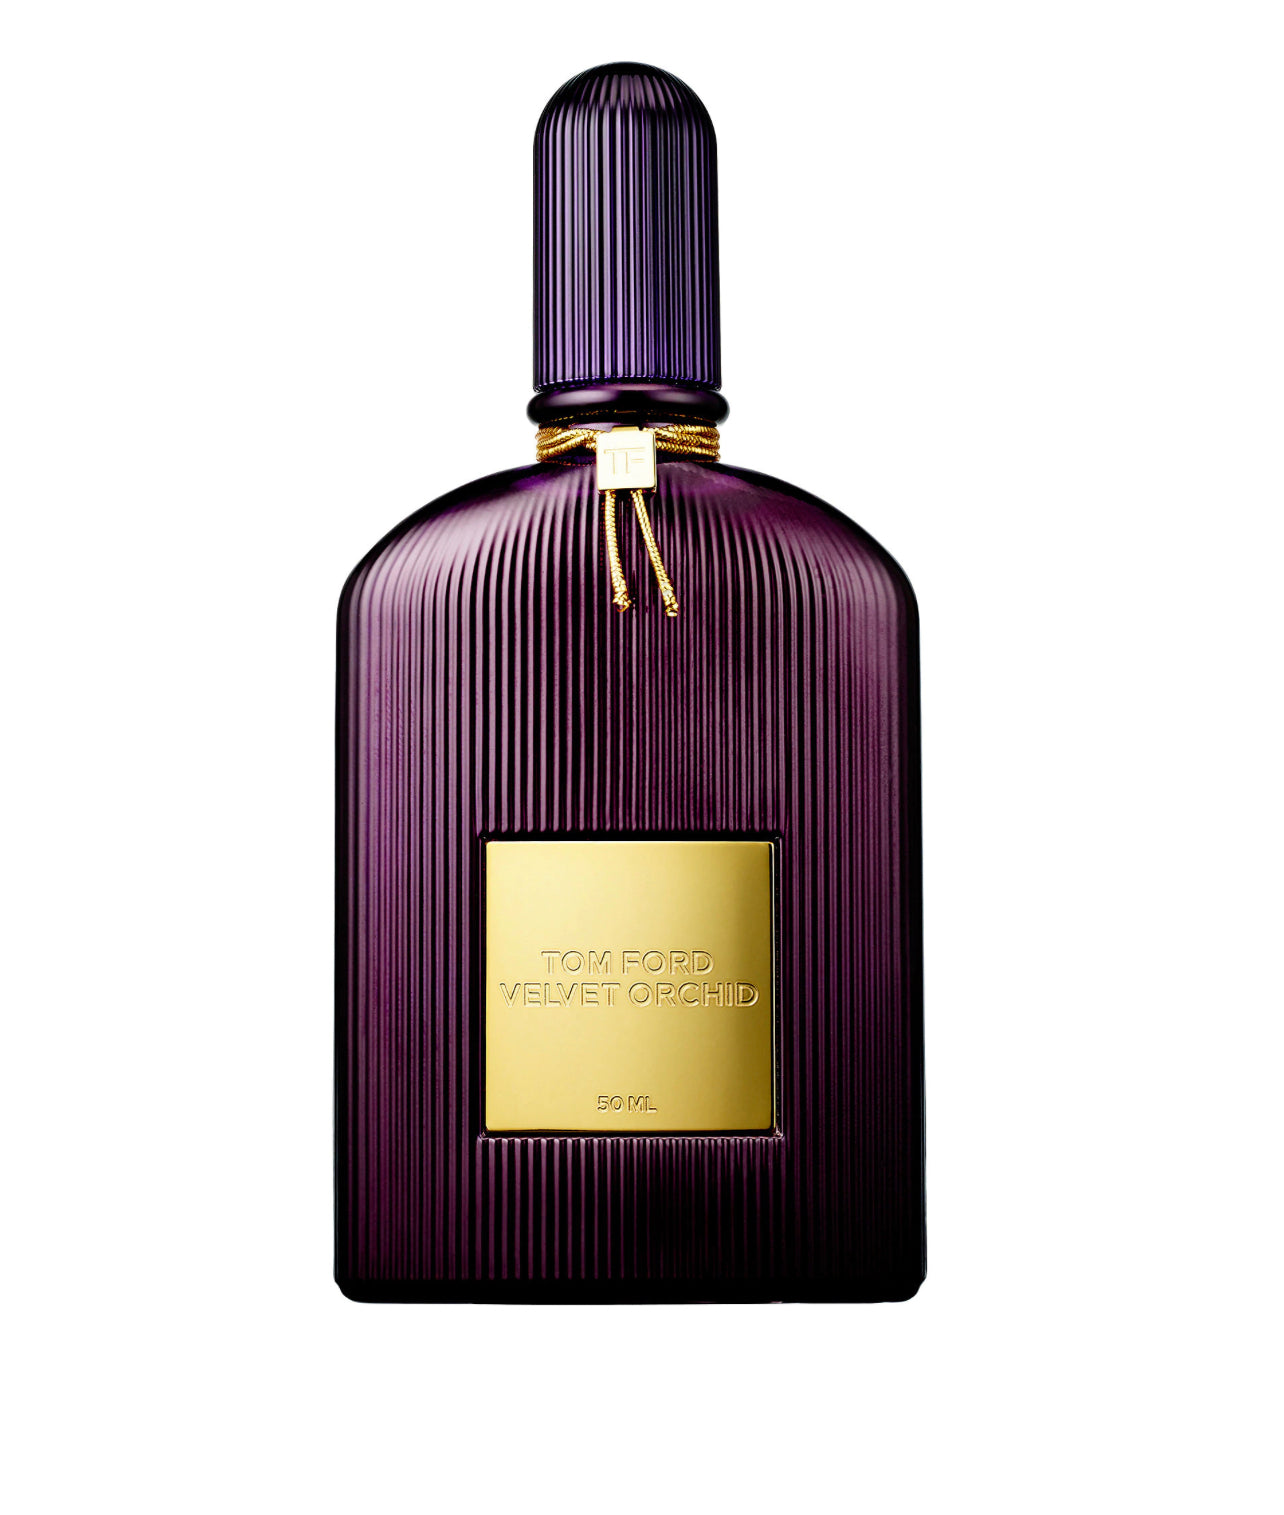 Tom Ford Velvet Orchid Eau De Parfum Samples – The Perfume Sample Shop